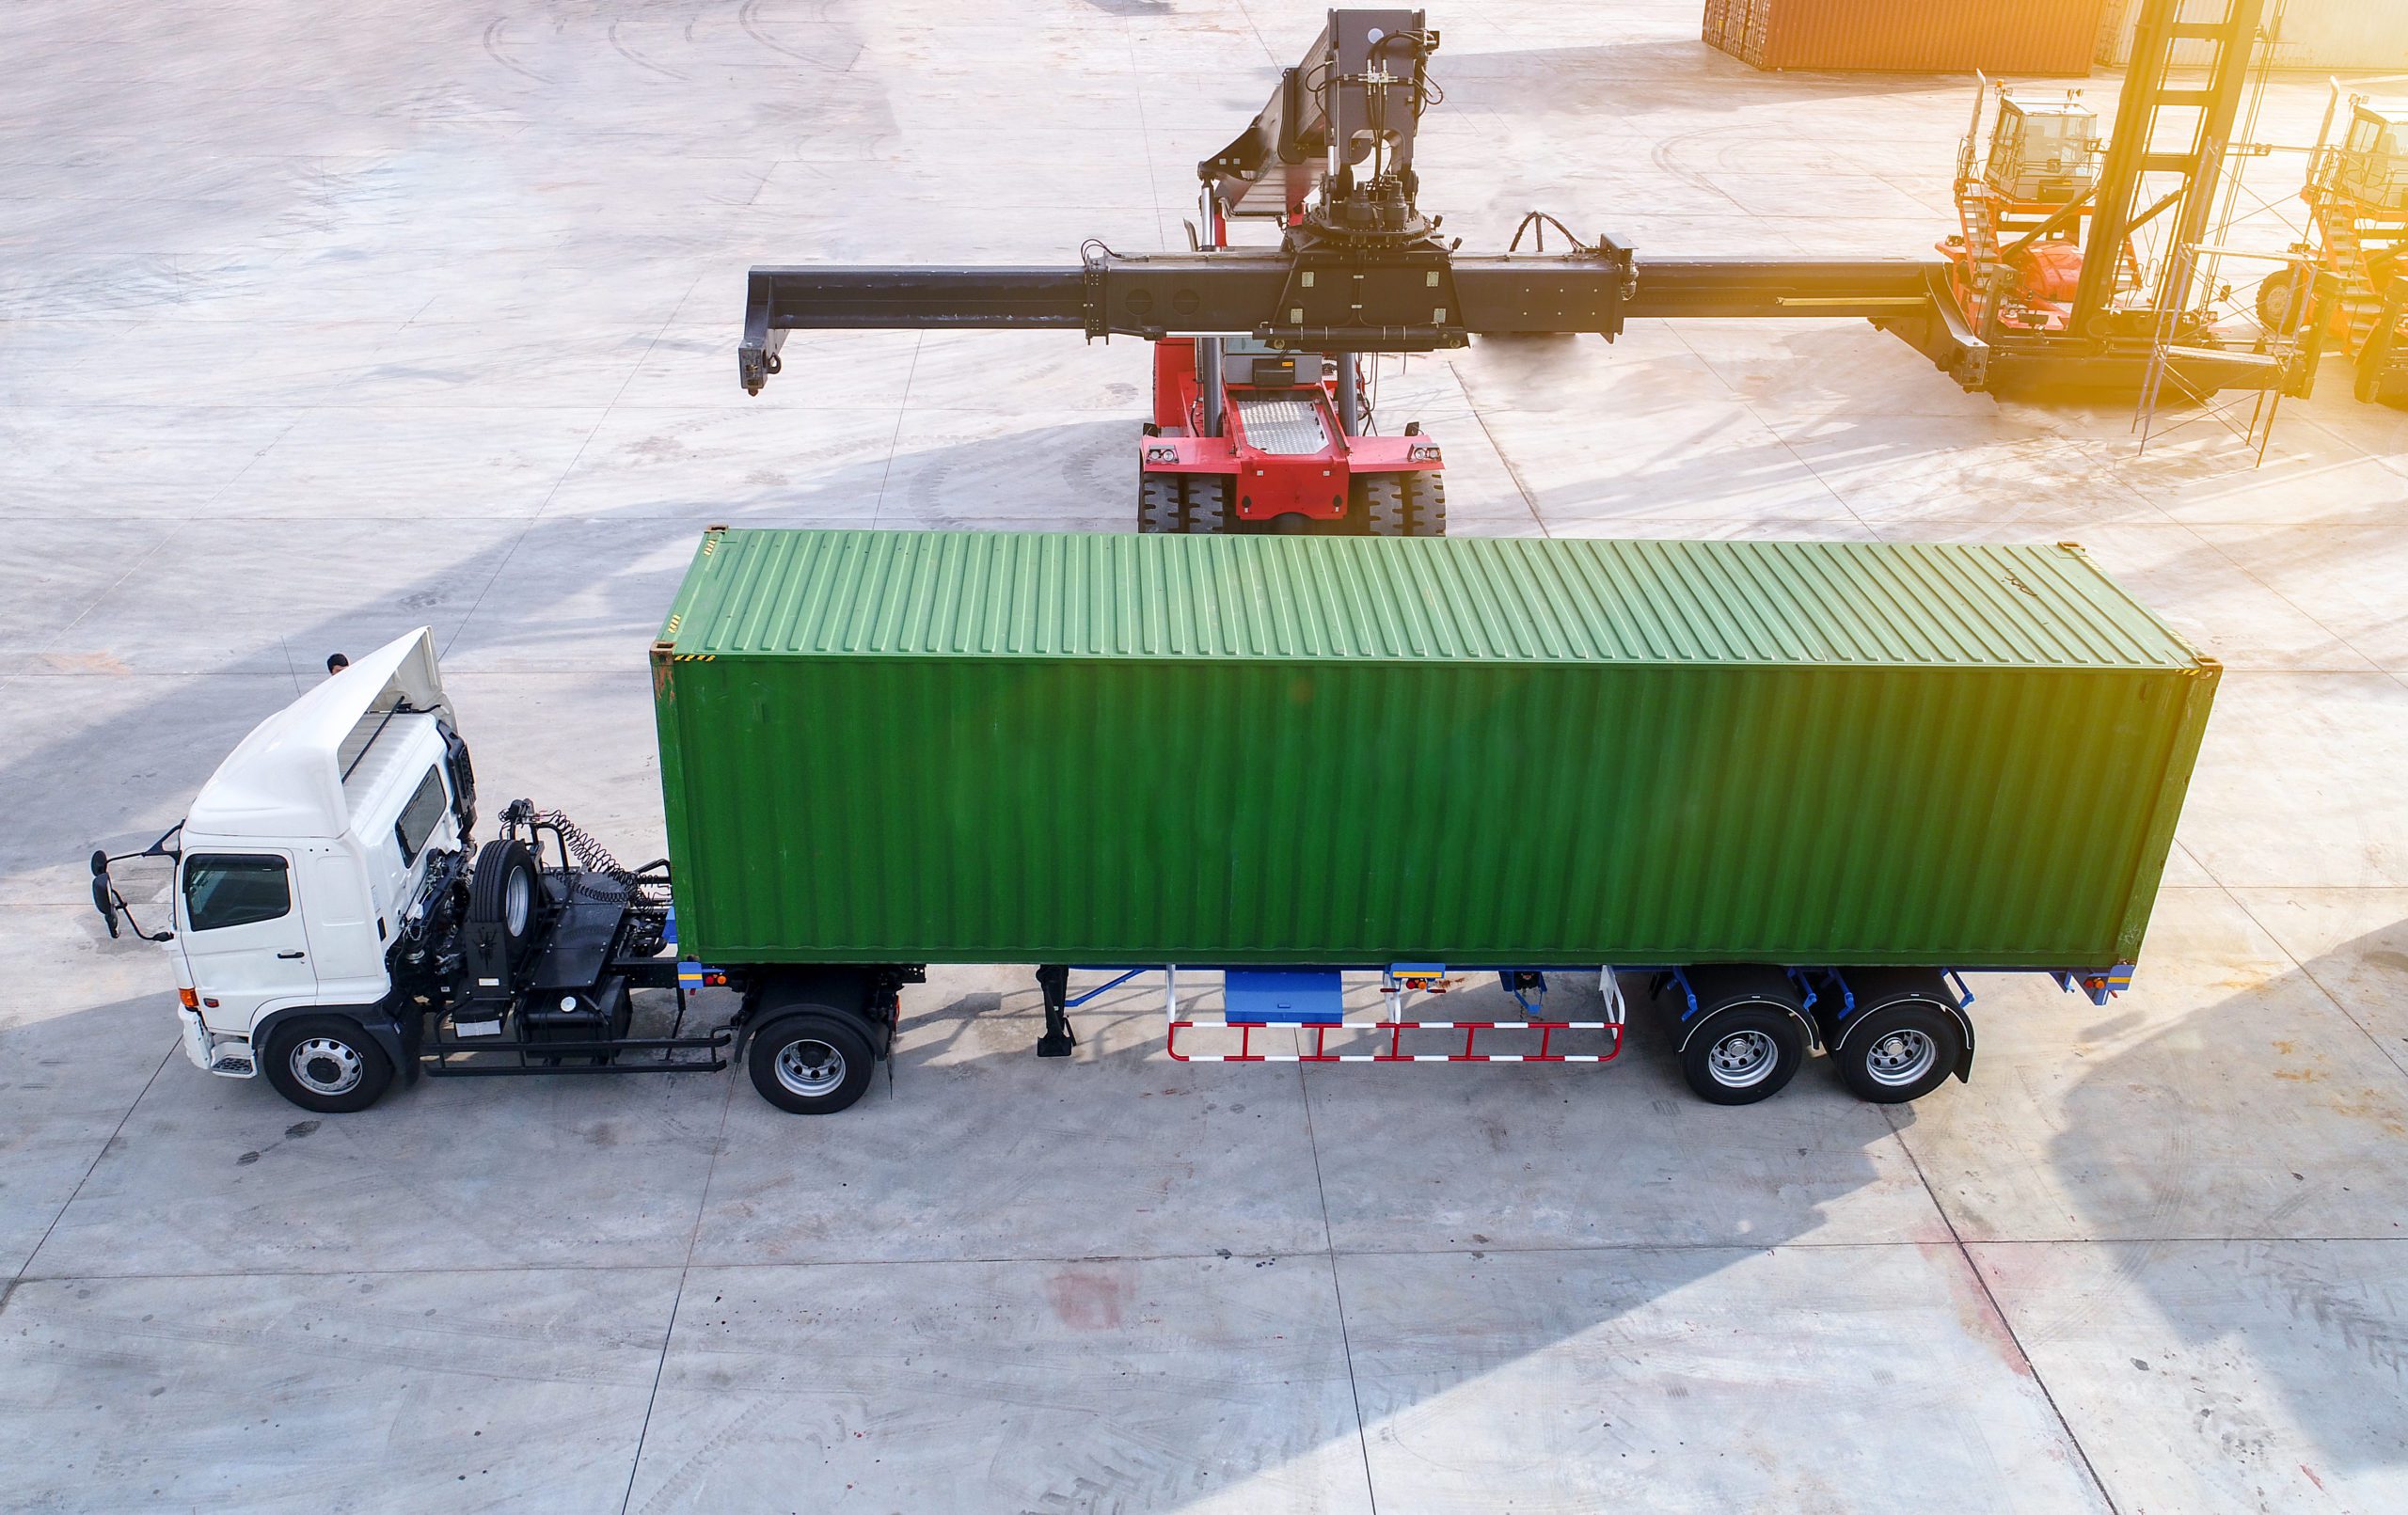 Conex Box vs Shipping Container